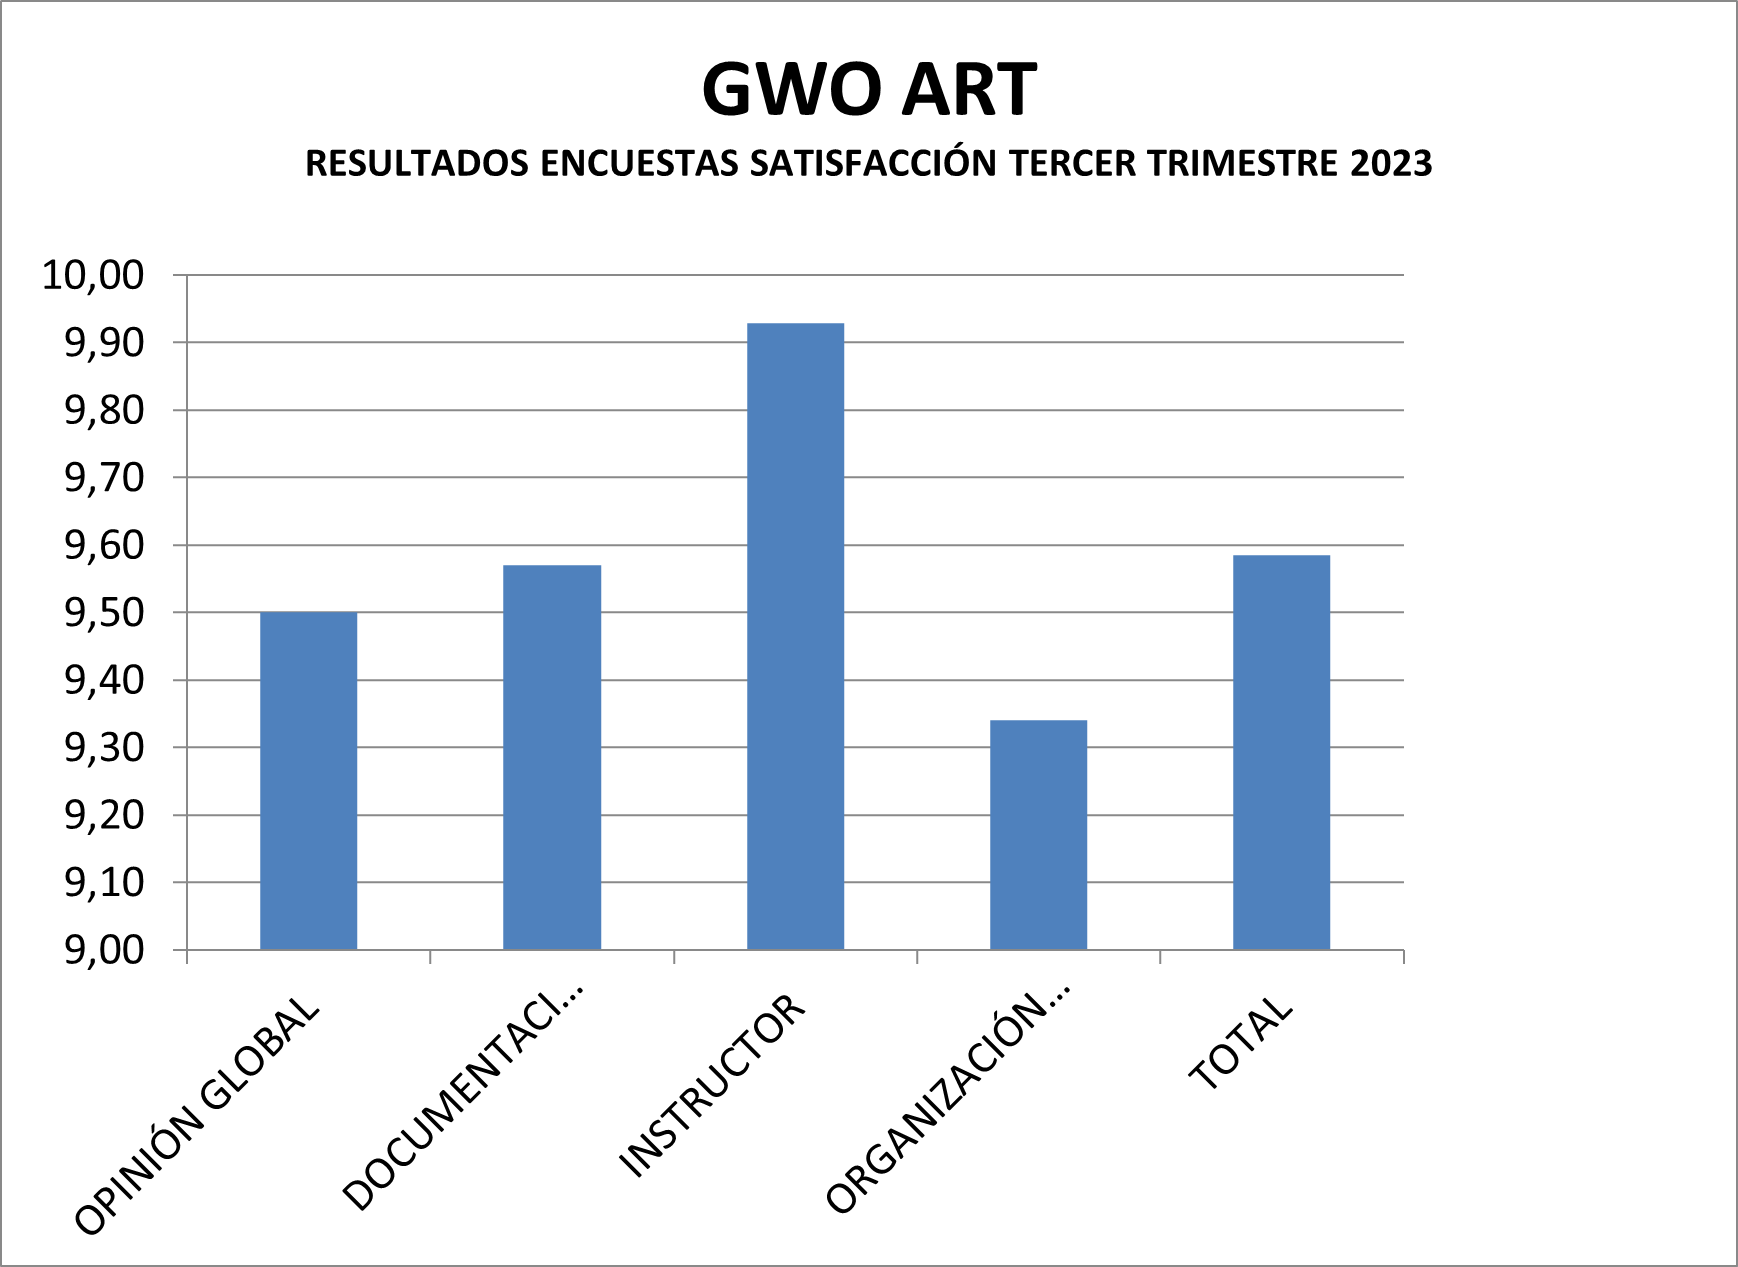 Encuesta de calidad GWO ART tercer trimestre 2023